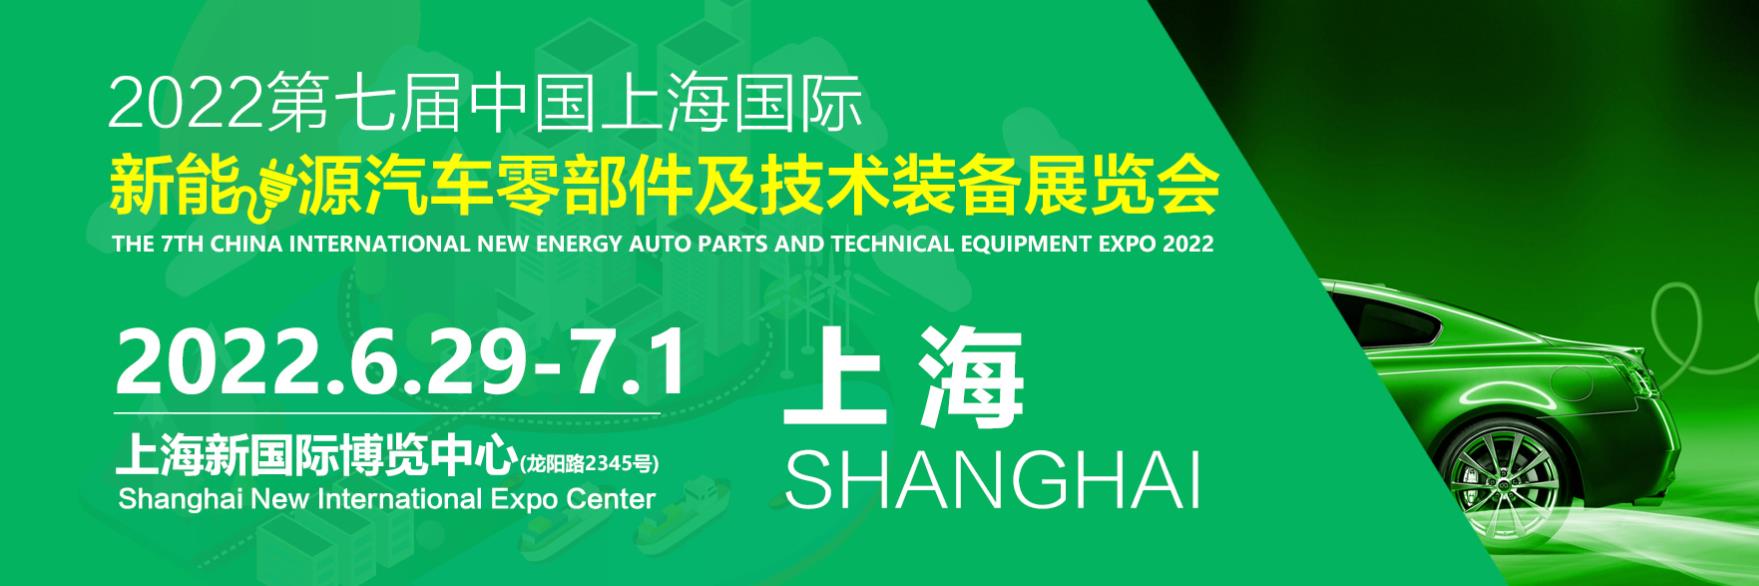 2022年第七届中国上海国际新能源汽车零部件及技术装备展览会